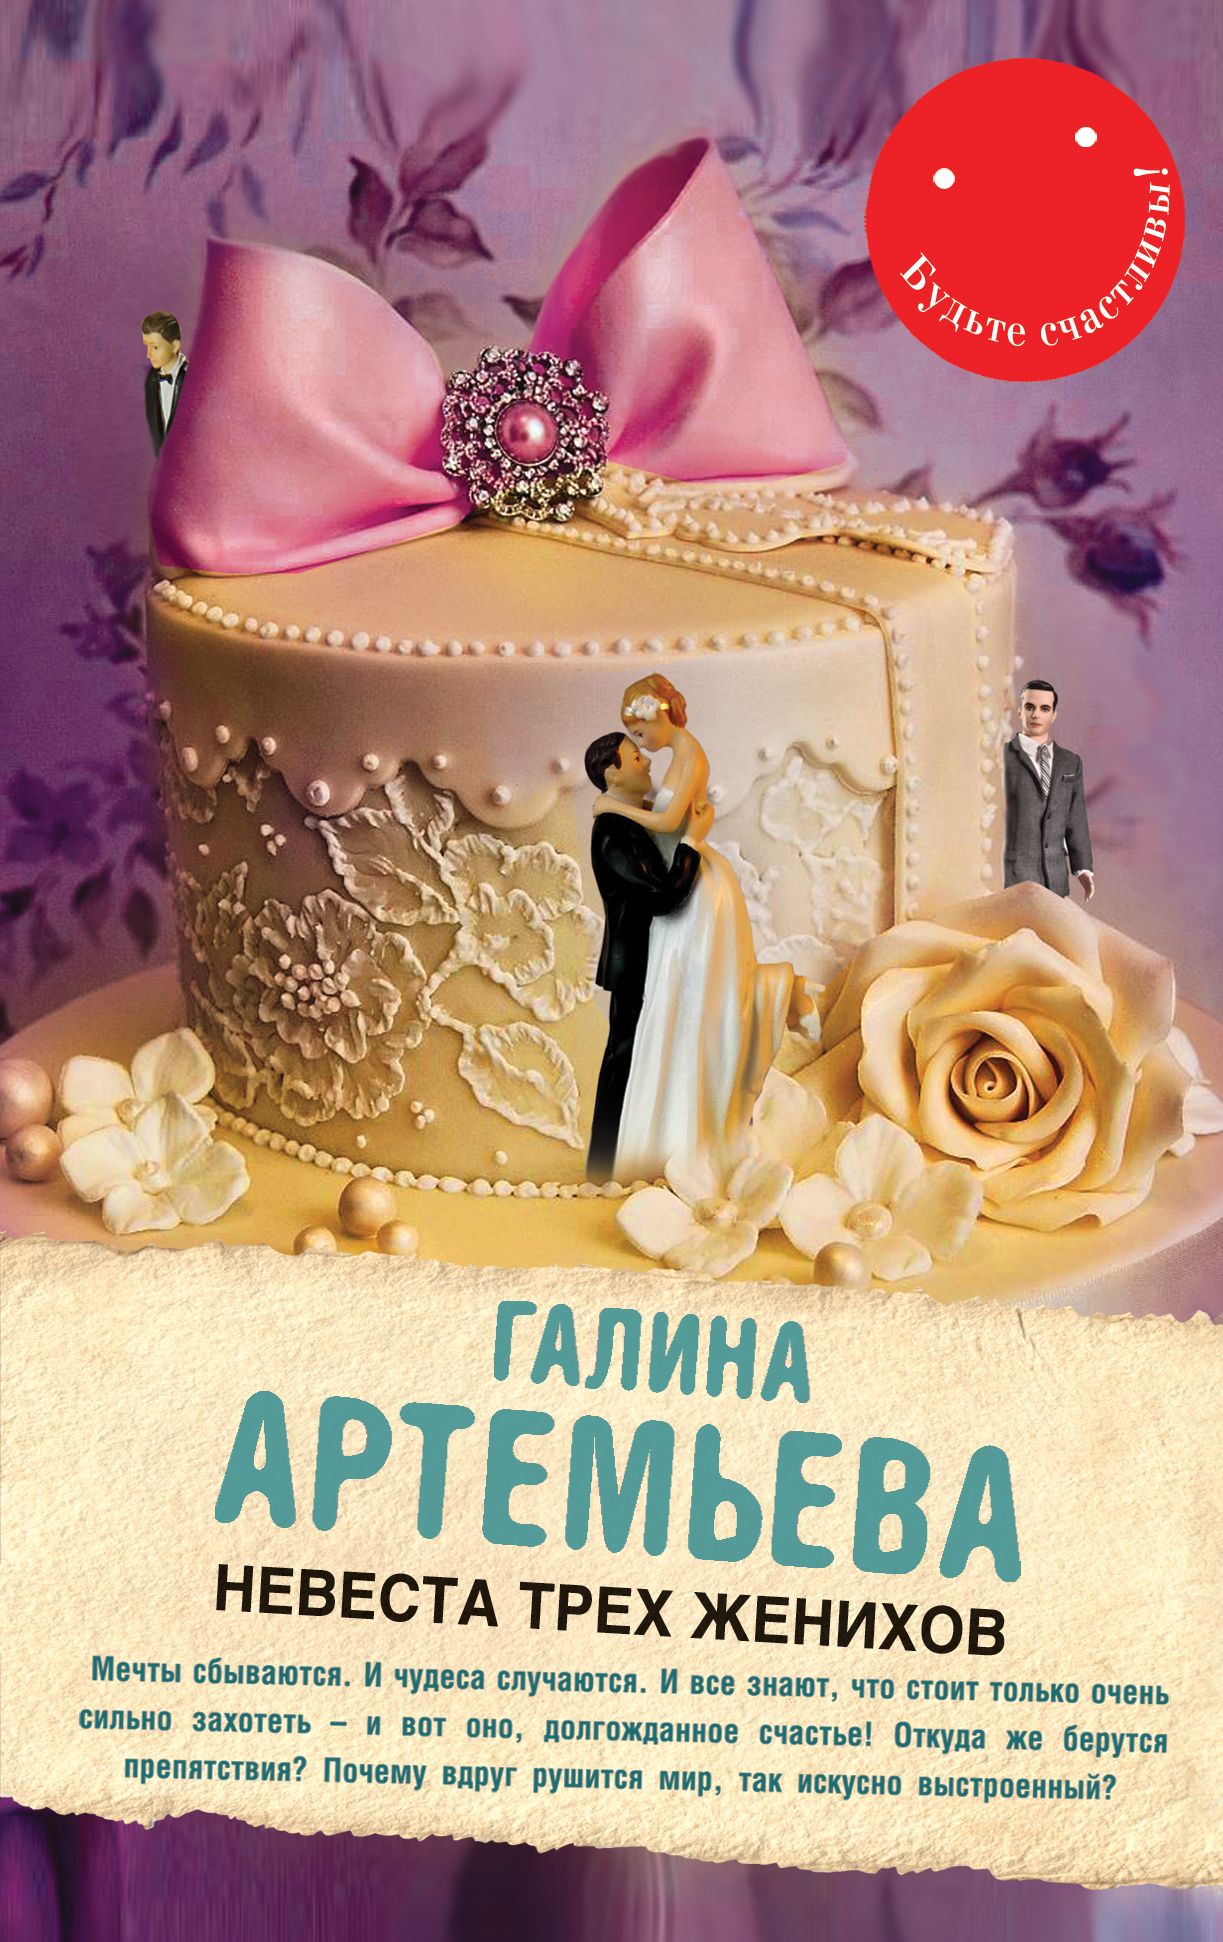 Невеста жениха книга. Книга невеста трех женихов Артемьева.